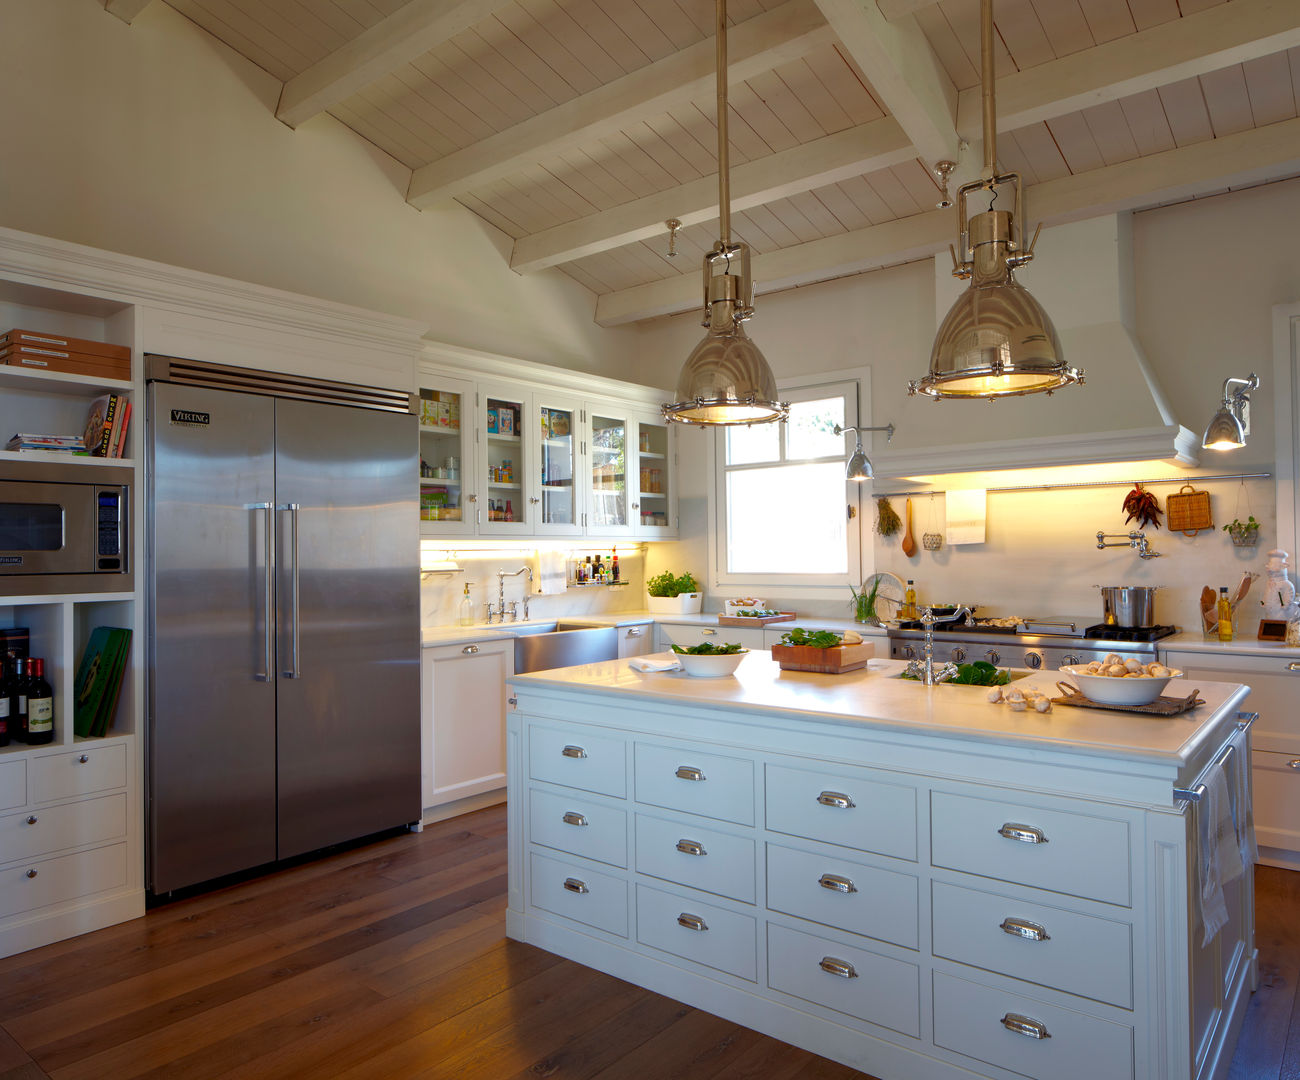 Cocina de estilo americano , DEULONDER arquitectura domestica DEULONDER arquitectura domestica مطبخ